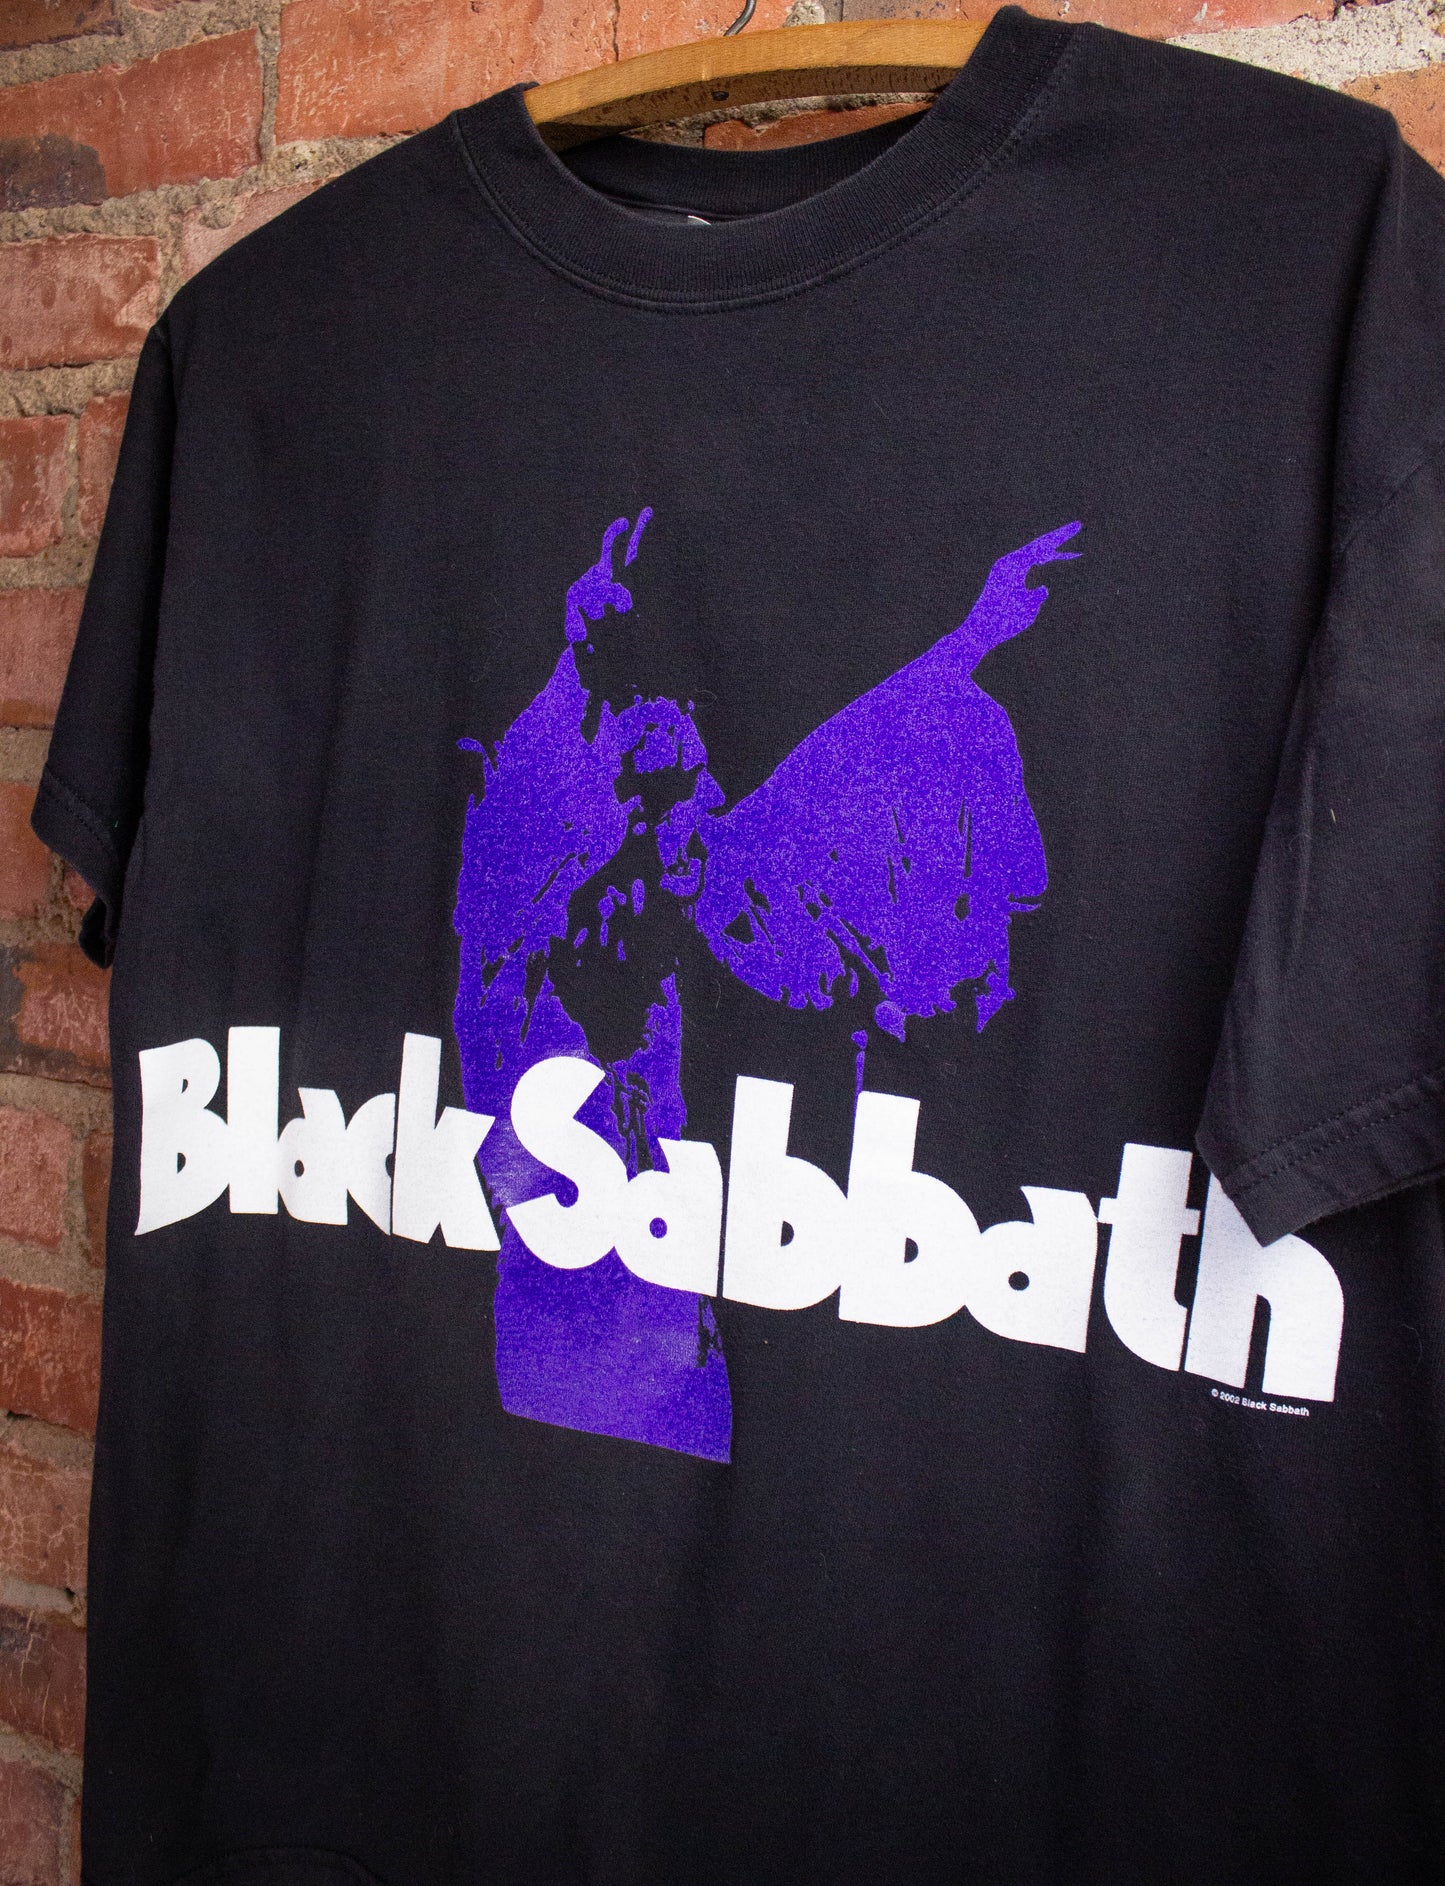 Vintage Black Sabbath Concert T-Shirt 2002 M